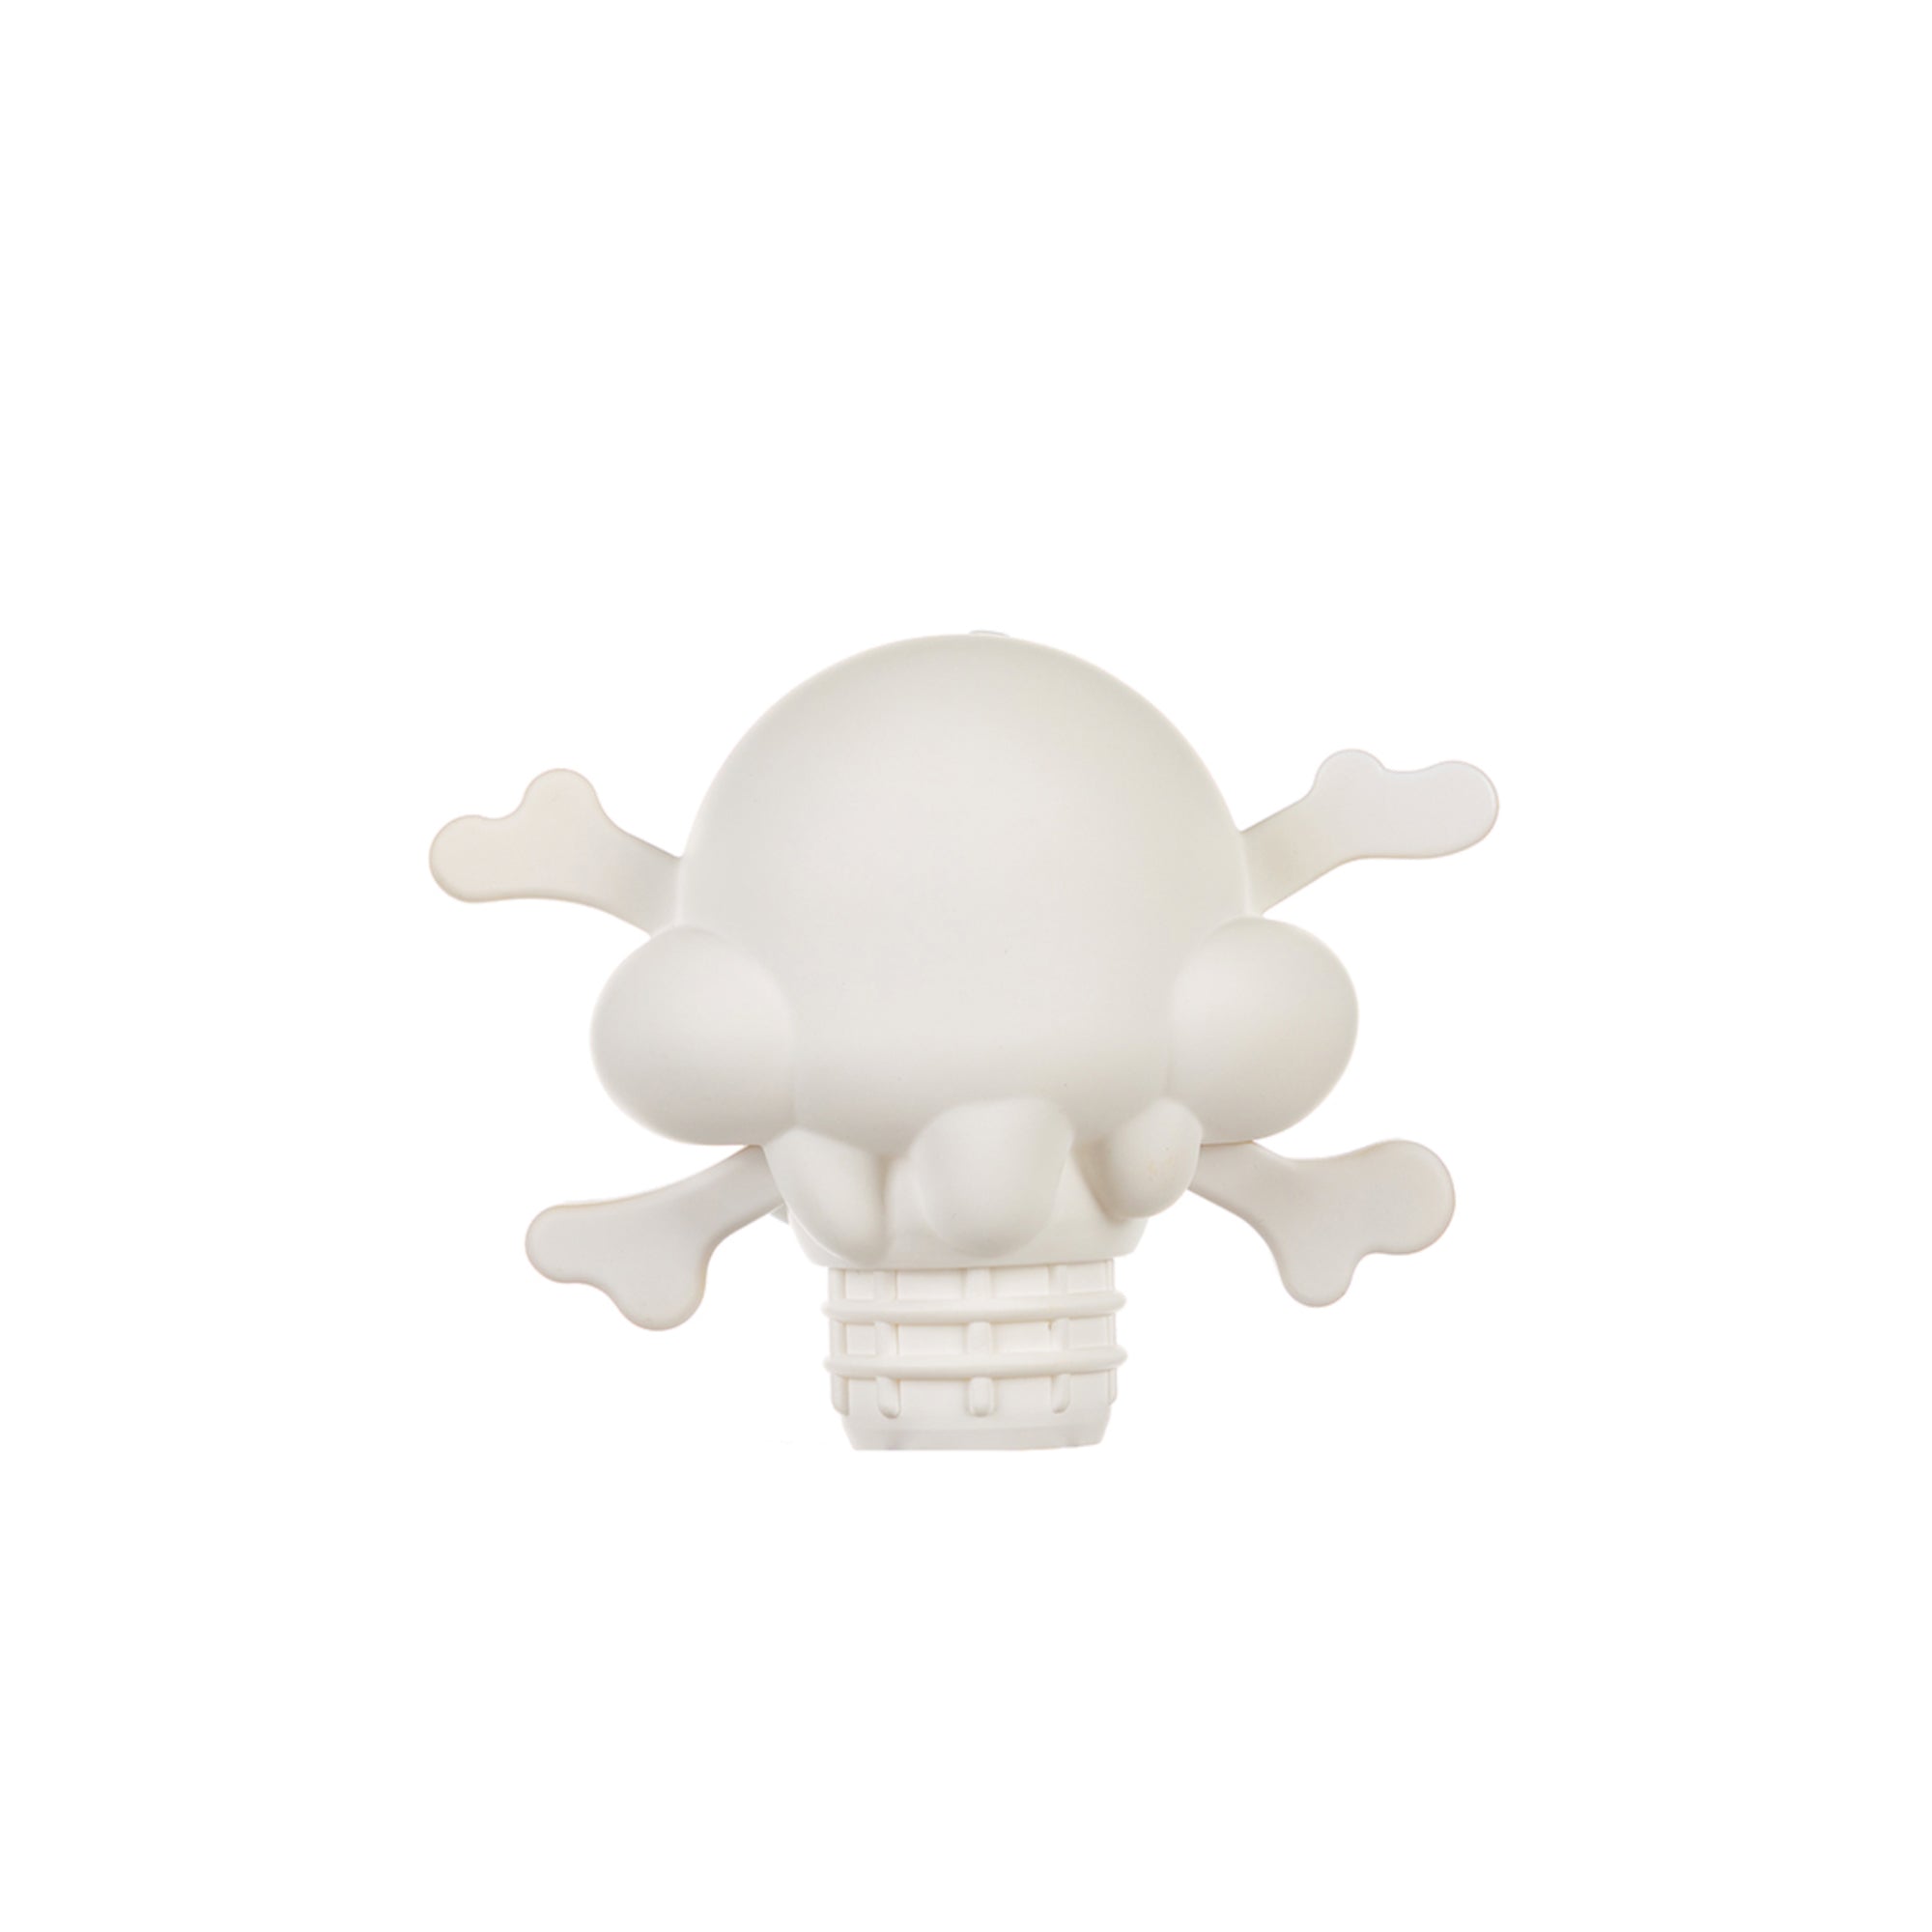 Icecream Cones N Bones Figurine 'White'